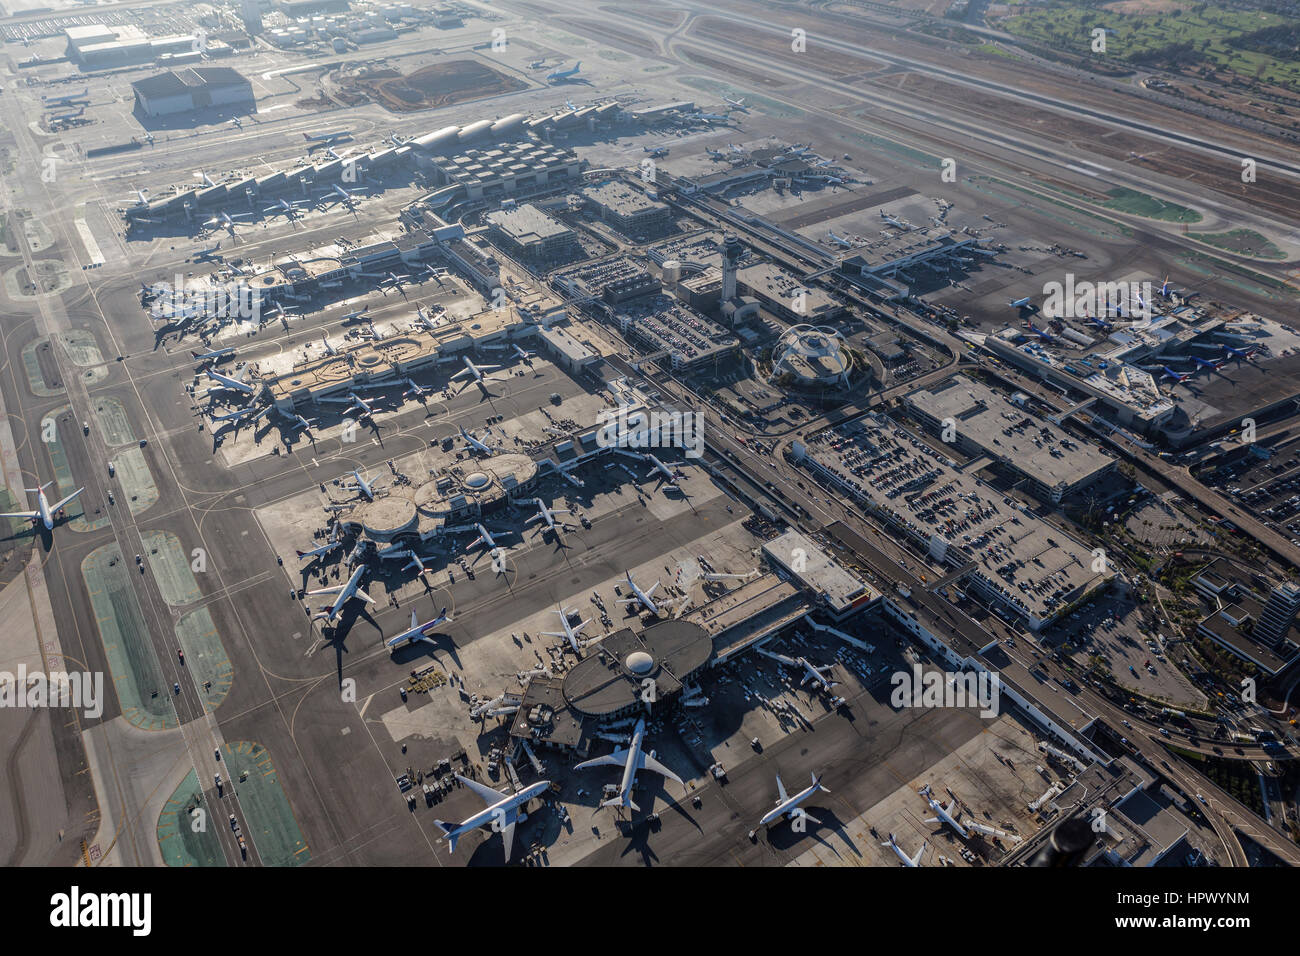 Los Angeles, Kalifornien, USA - 16. August 2016: Luftaufnahme des geschäftigen LAX Klemmen, Kontrollturm und Parkhäuser. Stockfoto